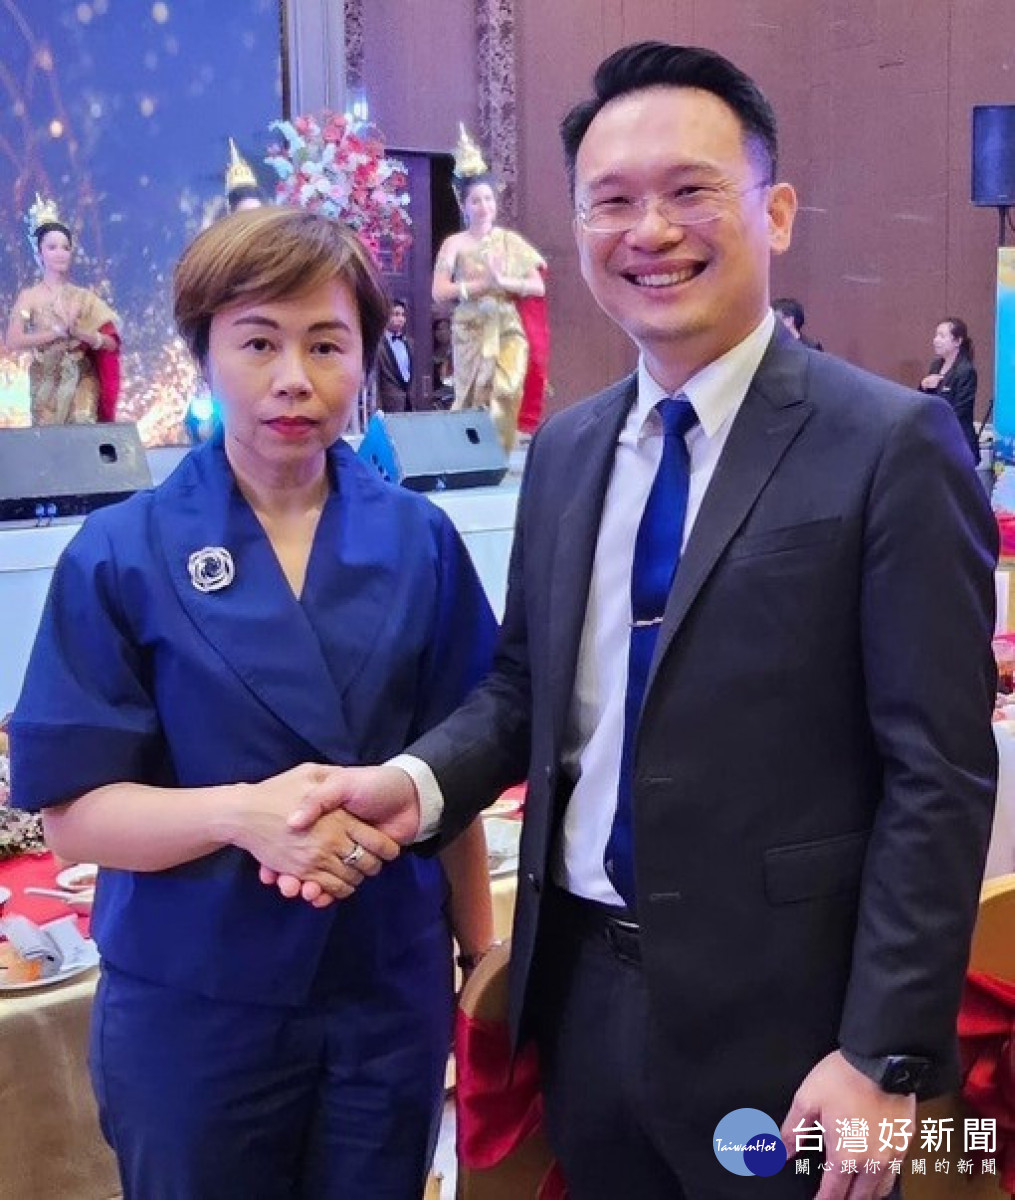 蘇俊賓副市長與曼谷市副市長塔維達·卡莫維tavida kamolvej握手致意。<br />
